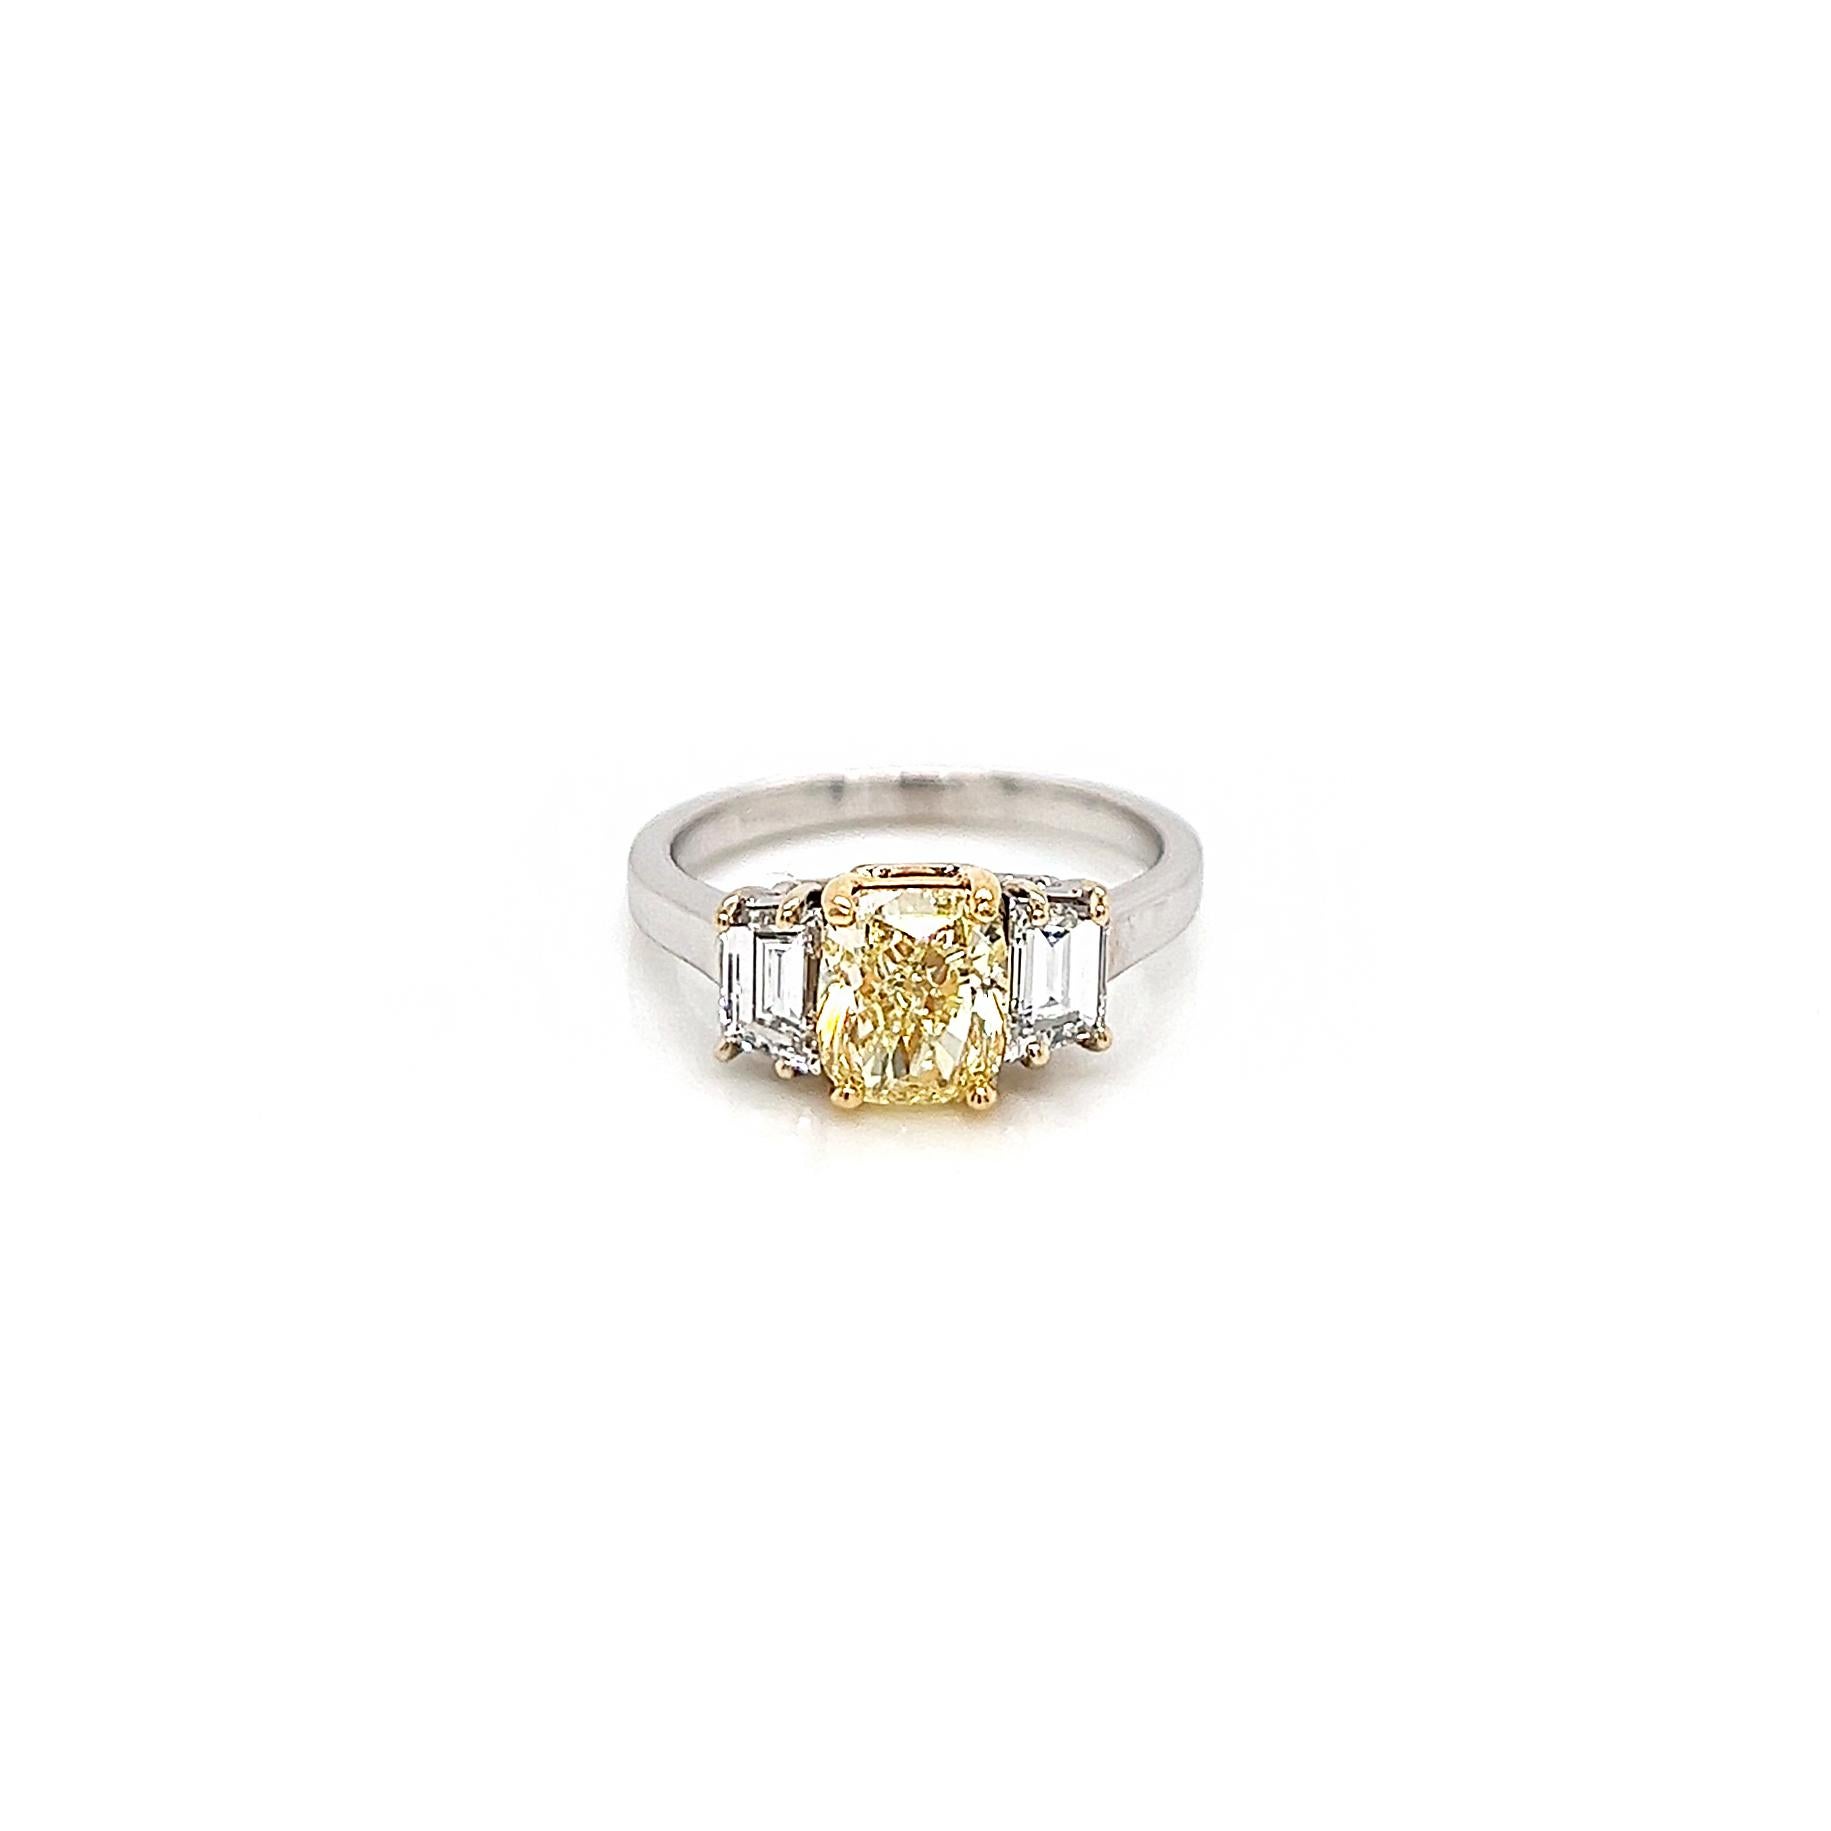 2.15 Gesamtkarat Gelber Diamant Drei Stein Damenring. GIA-zertifiziert.

Wie die hellgoldenen Locken von 